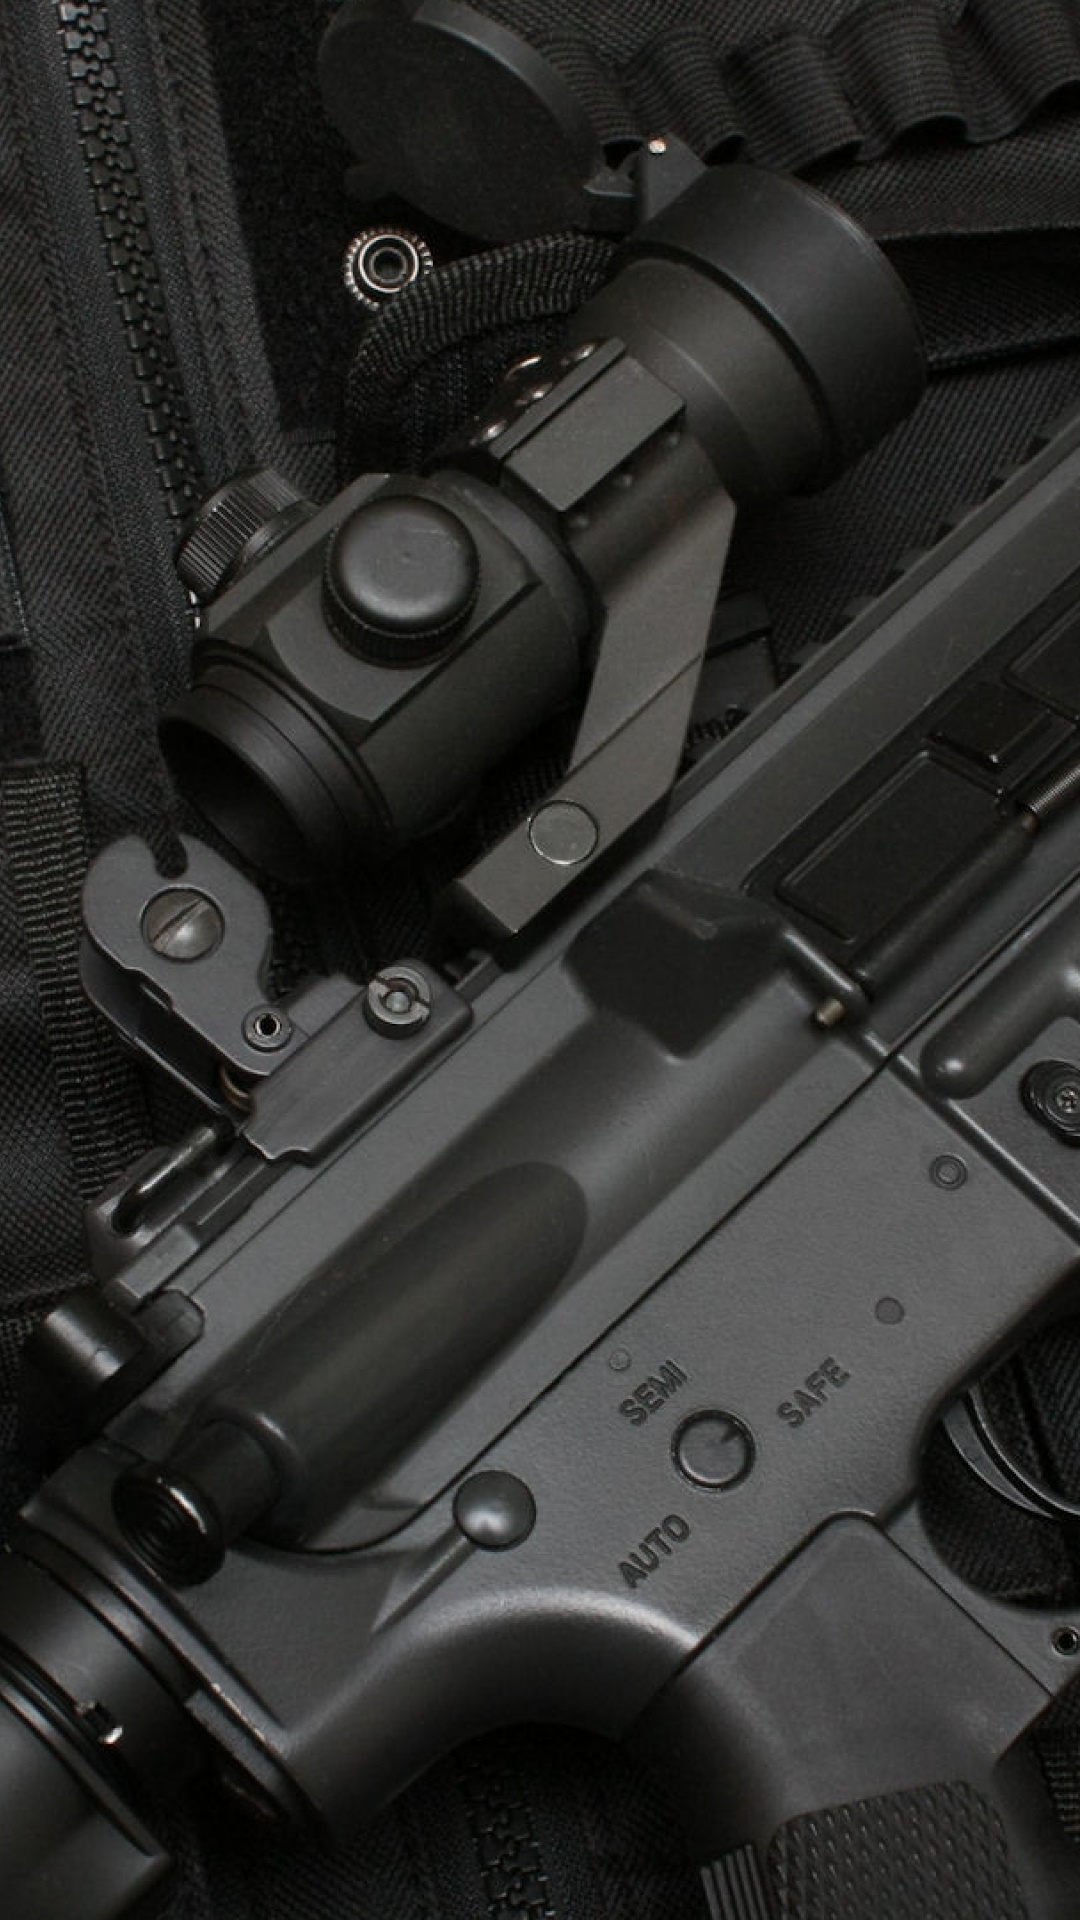 Swat, Feuerwaffe, Trigger, Airsoft, Airsoft Gun. Wallpaper in 1080x1920 Resolution